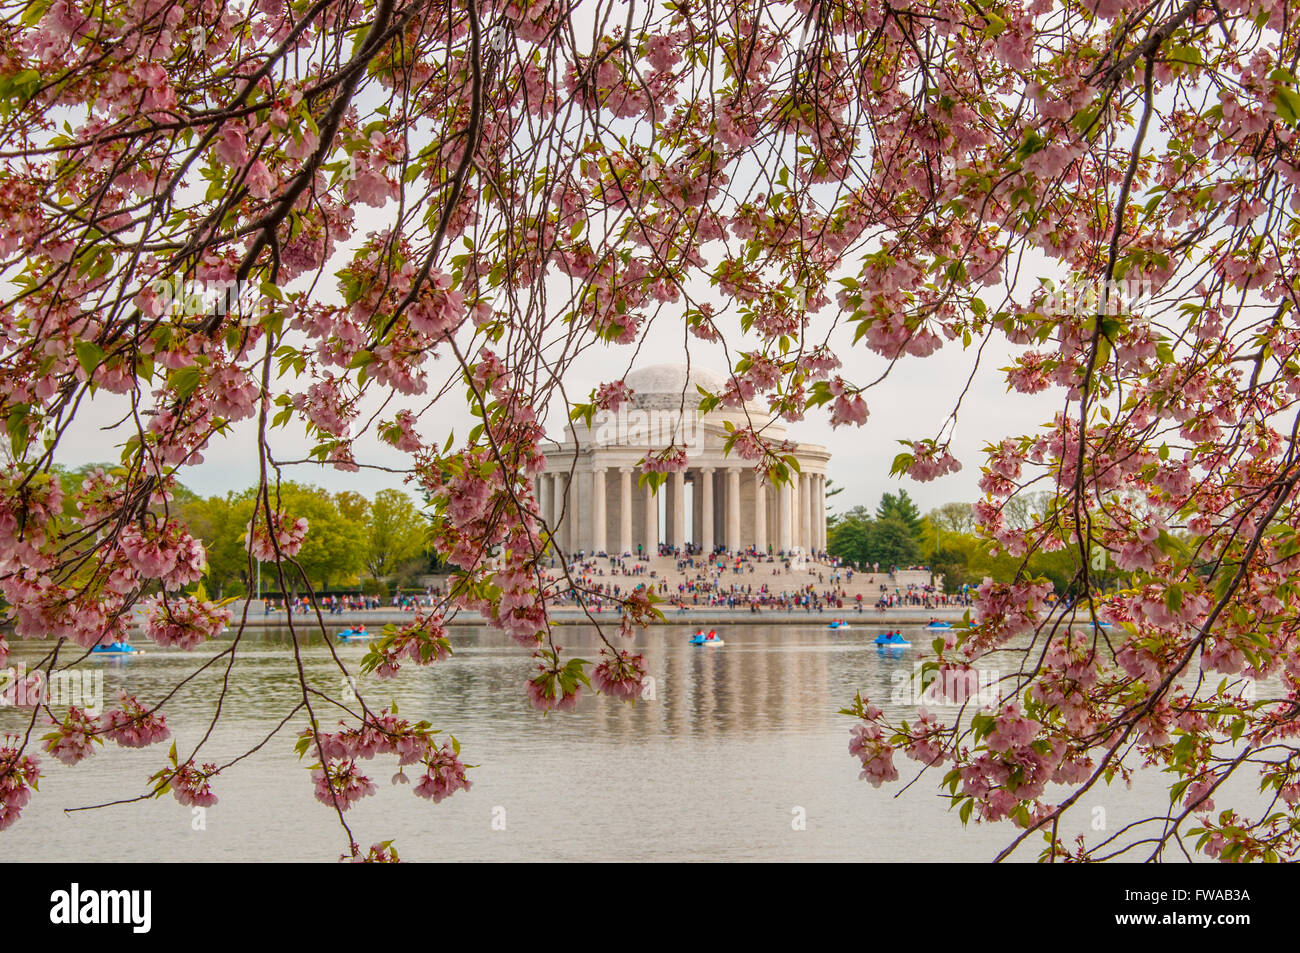 Les cerisiers en fleurs à Washington DC, ayant des fleurs roses , Bateaux bleu dans le lac et un bâtiment après le lac Banque D'Images